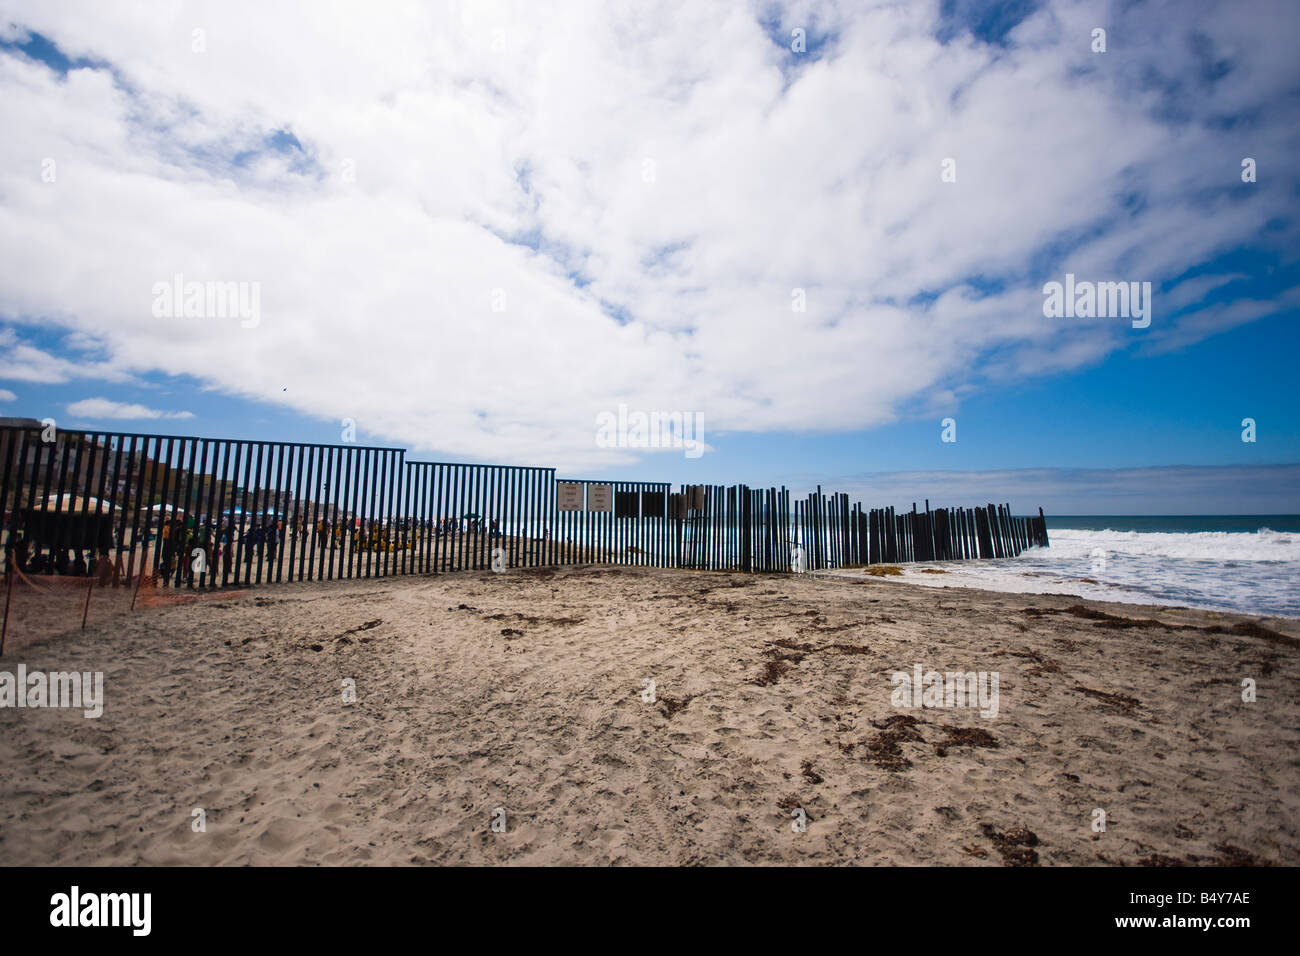 Ein Blick auf die internationale Grenze zwischen den Vereinigten Staaten und Mexiko, von der US-Seite des Strandes. Stockfoto